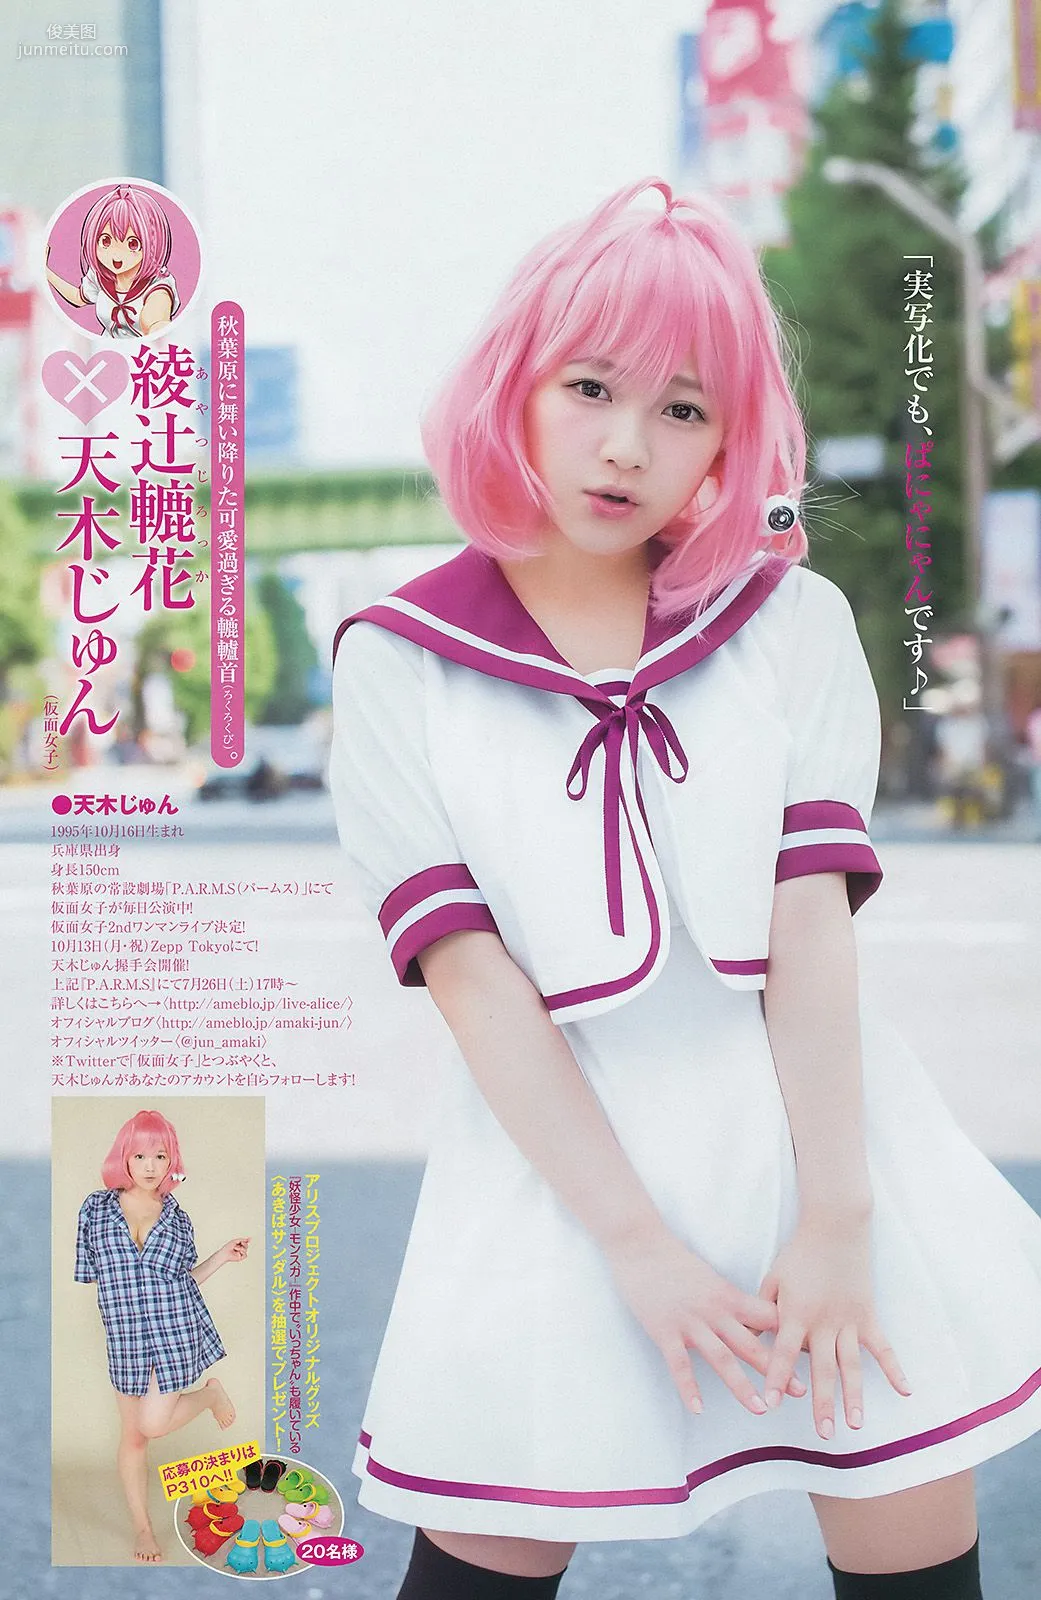 白間美瑠 キャラビア2.5 優希美青 [Weekly Young Jump] 2014年No.33 写真杂志10